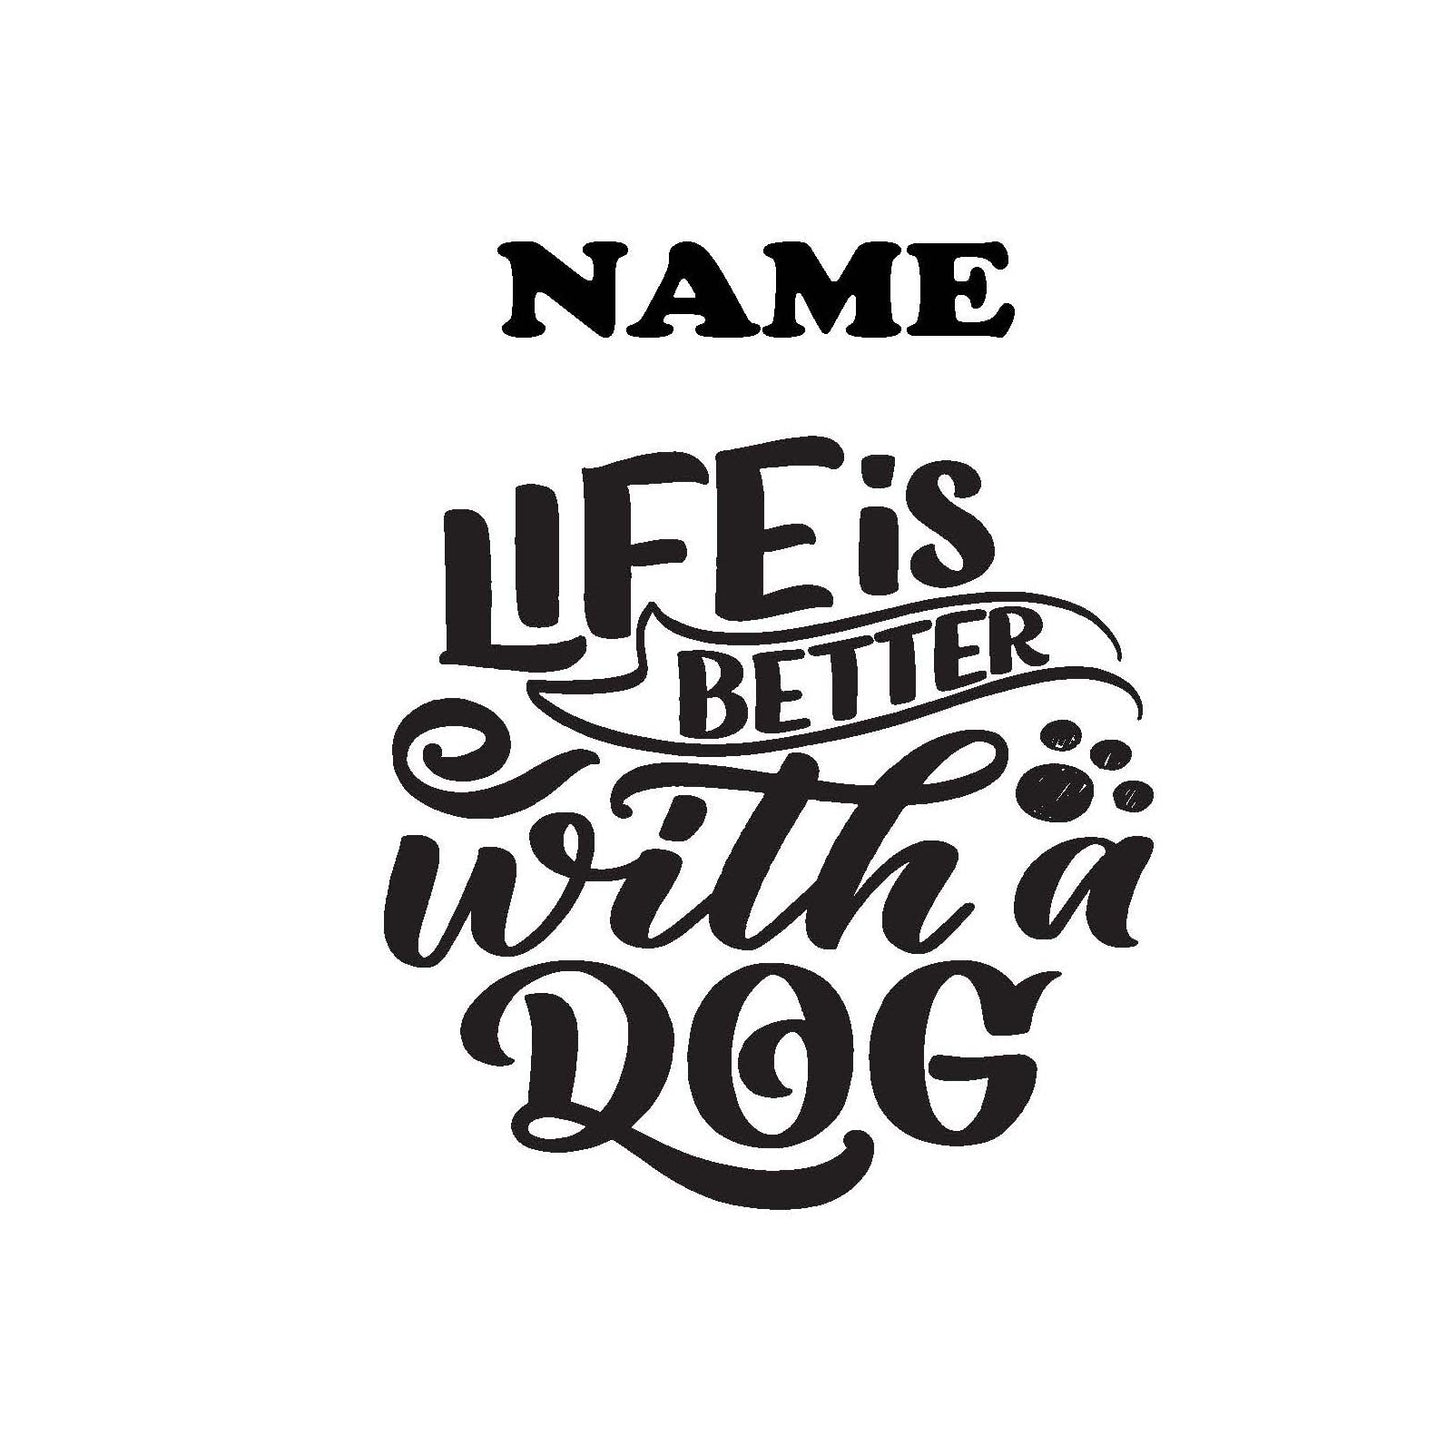 Dog engraving slogan